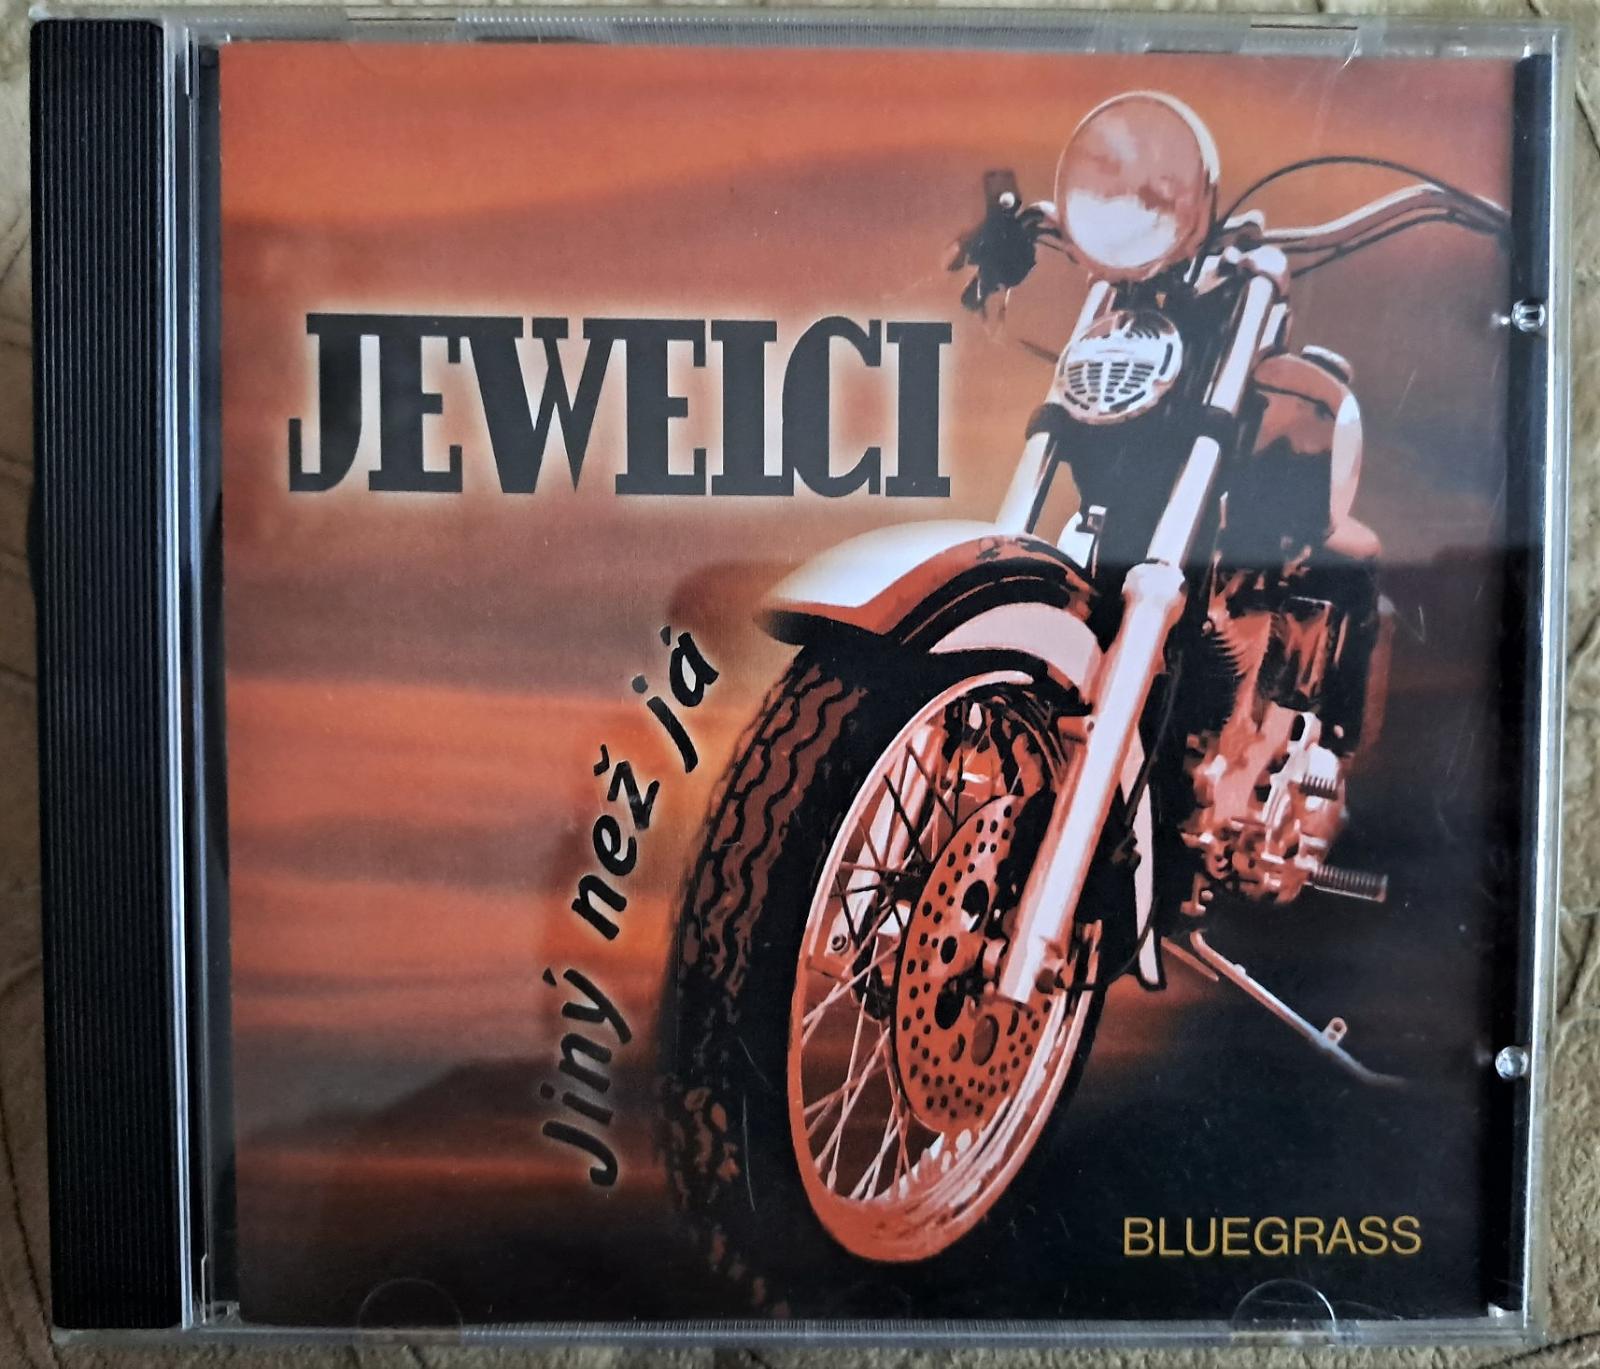 CD JEWELCI Iný ako ja (bluegrass) - Hudba